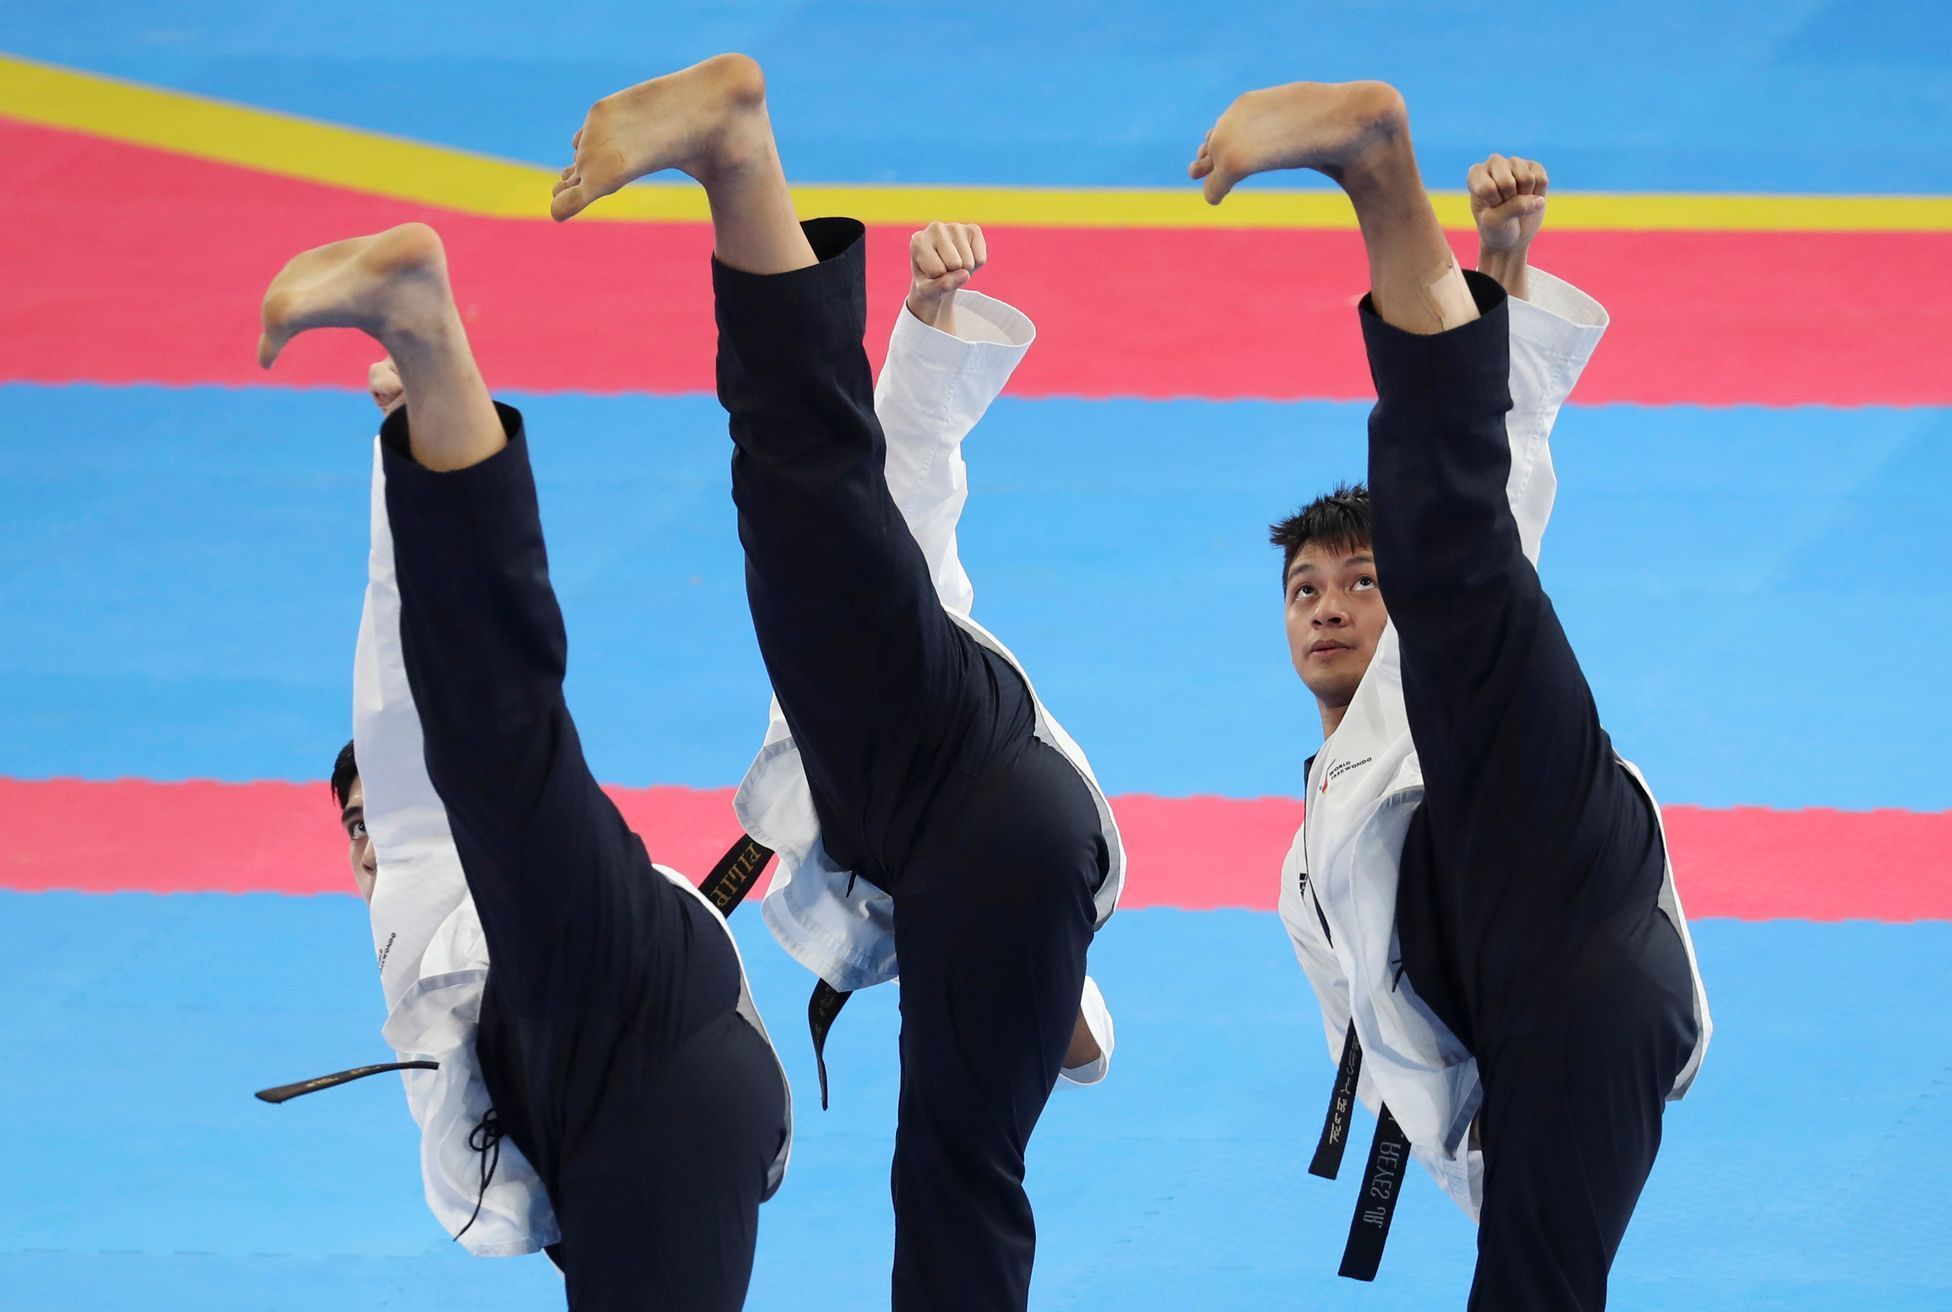 Hry Jihovýchodní Asie 2020: Taekwondo